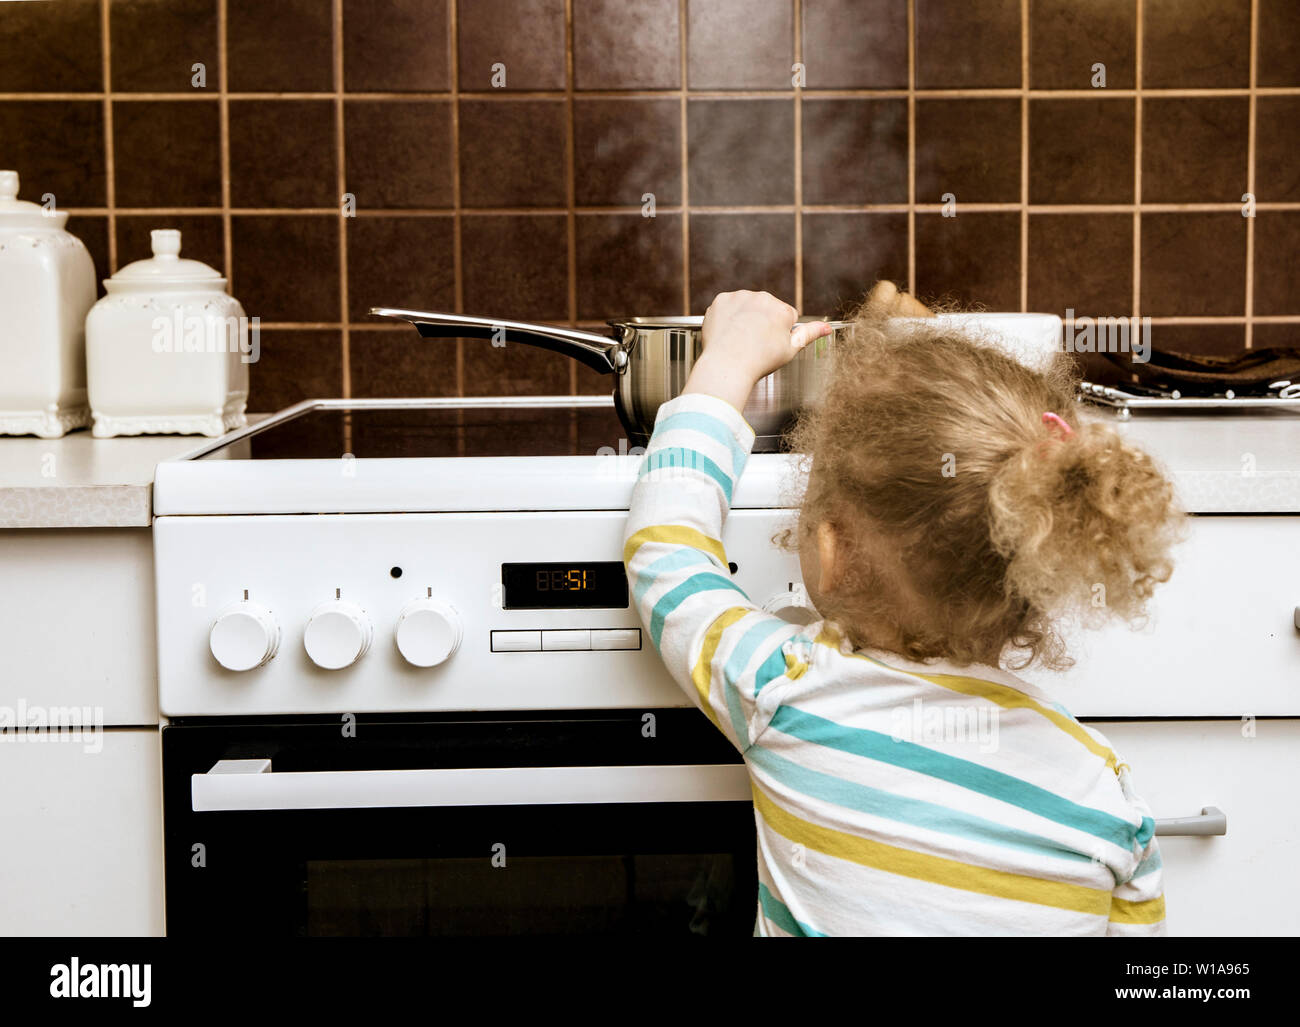 Unfall warten, um zu geschehen. Kleinkind Mädchen ziehen kochenden Topf Wasser in der Küche zu Hause. Gefahren zu Hause, Haut verbrennen Konzept (eingerichtet, Topf ist leer). Stockfoto